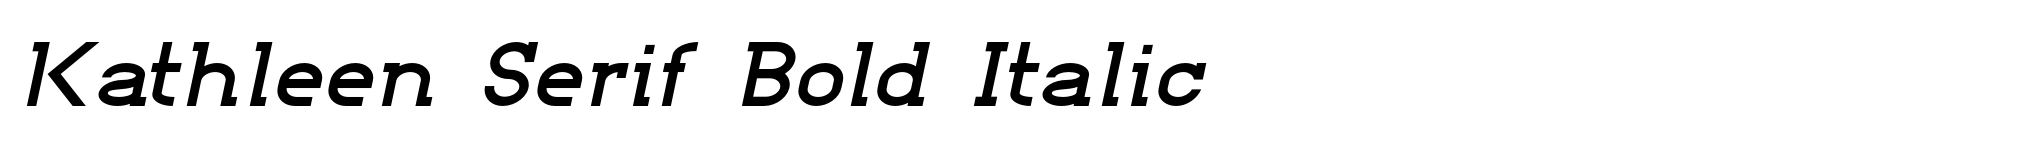 Kathleen Serif Bold Italic image